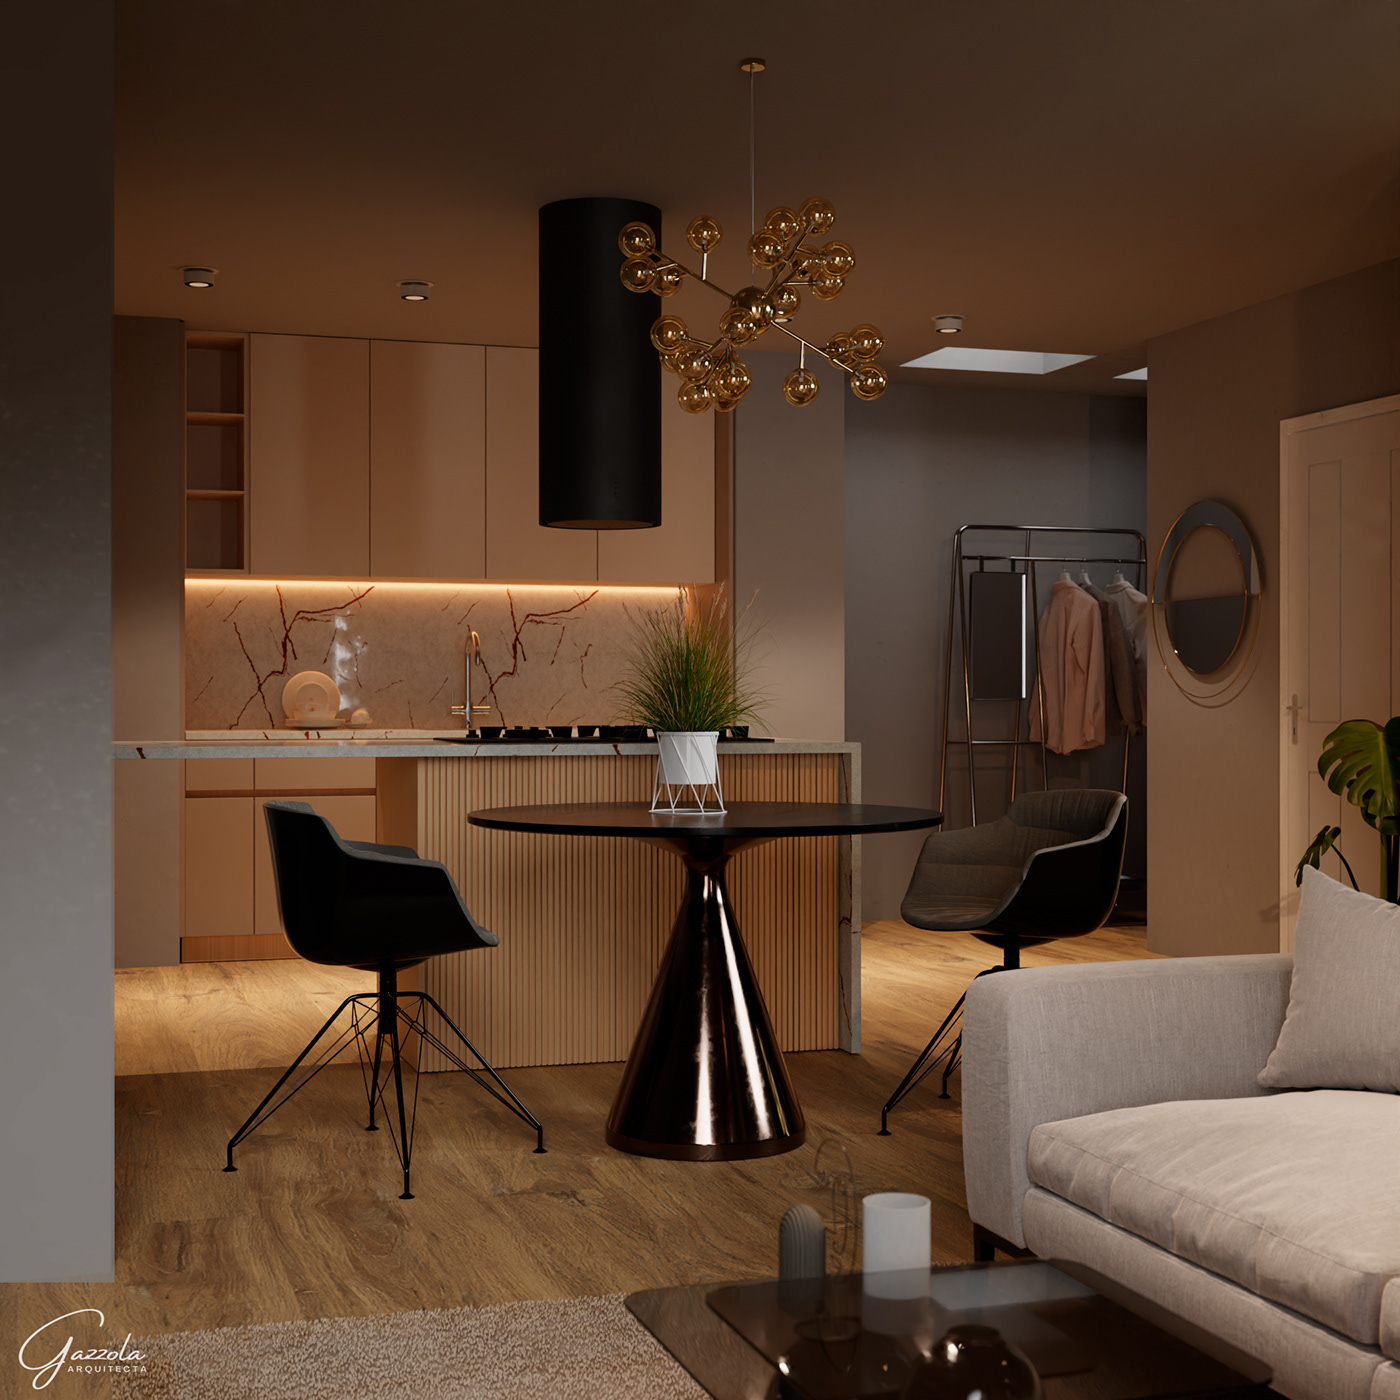 blender 3D Render interior design  modern visualization architecture apartamento apartament Interior